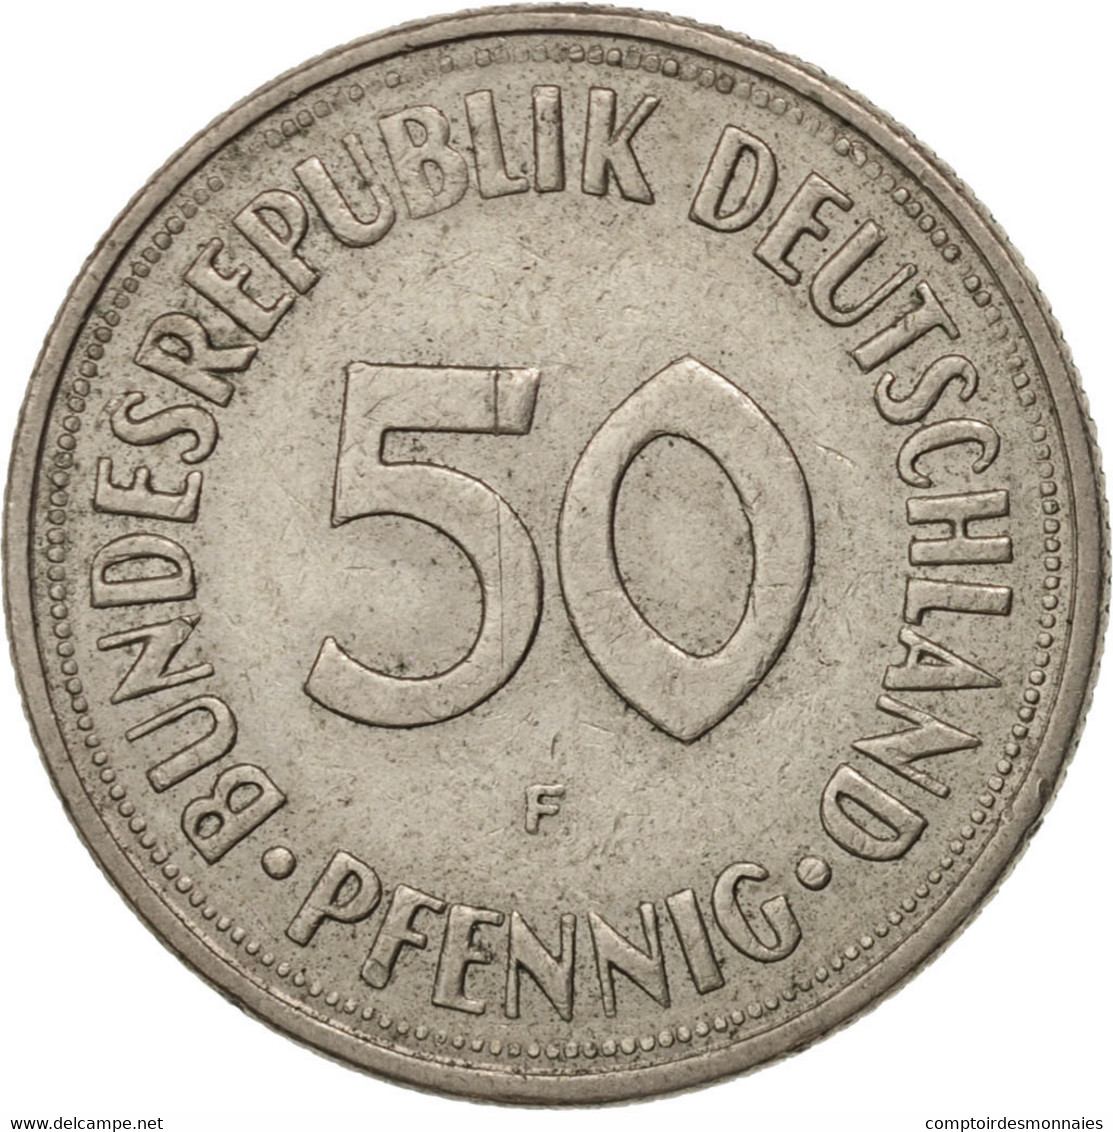 Monnaie, République Fédérale Allemande, 50 Pfennig, 1969, Stuttgart, TTB - 50 Pfennig